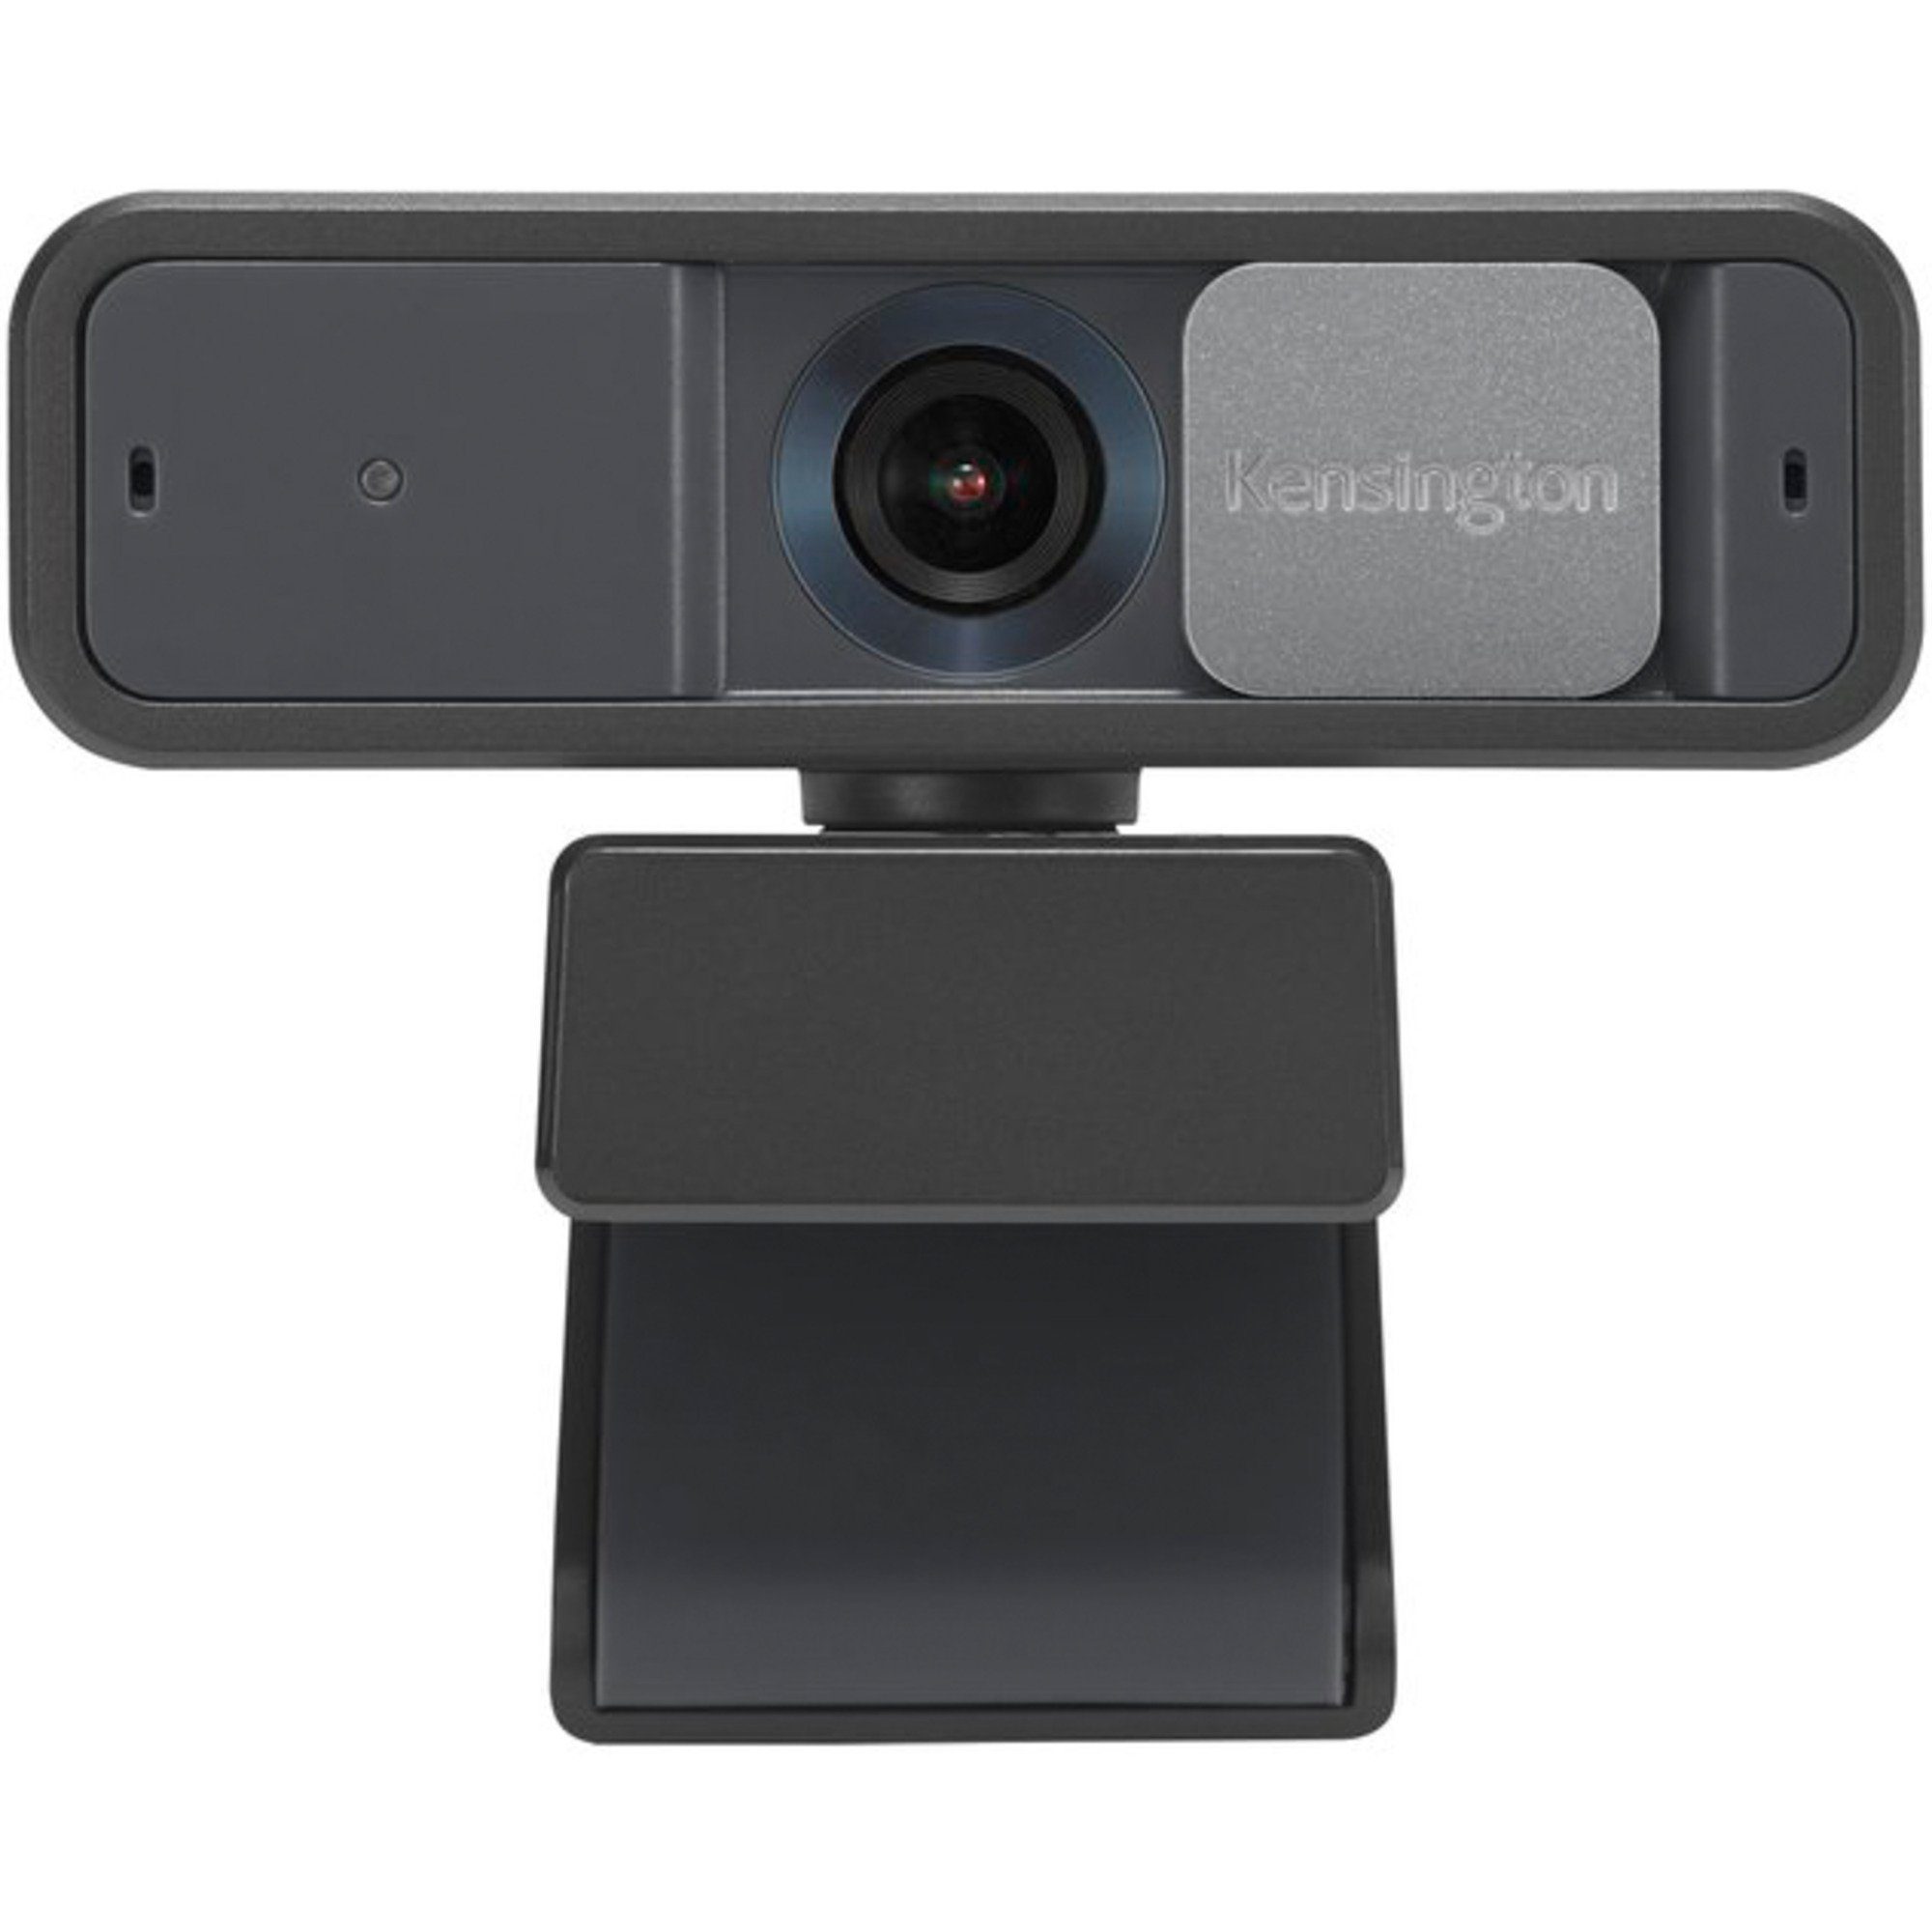 W2050 Focus, Webcam Kensington Pro Webcam KENSINGTON Auto 1080p